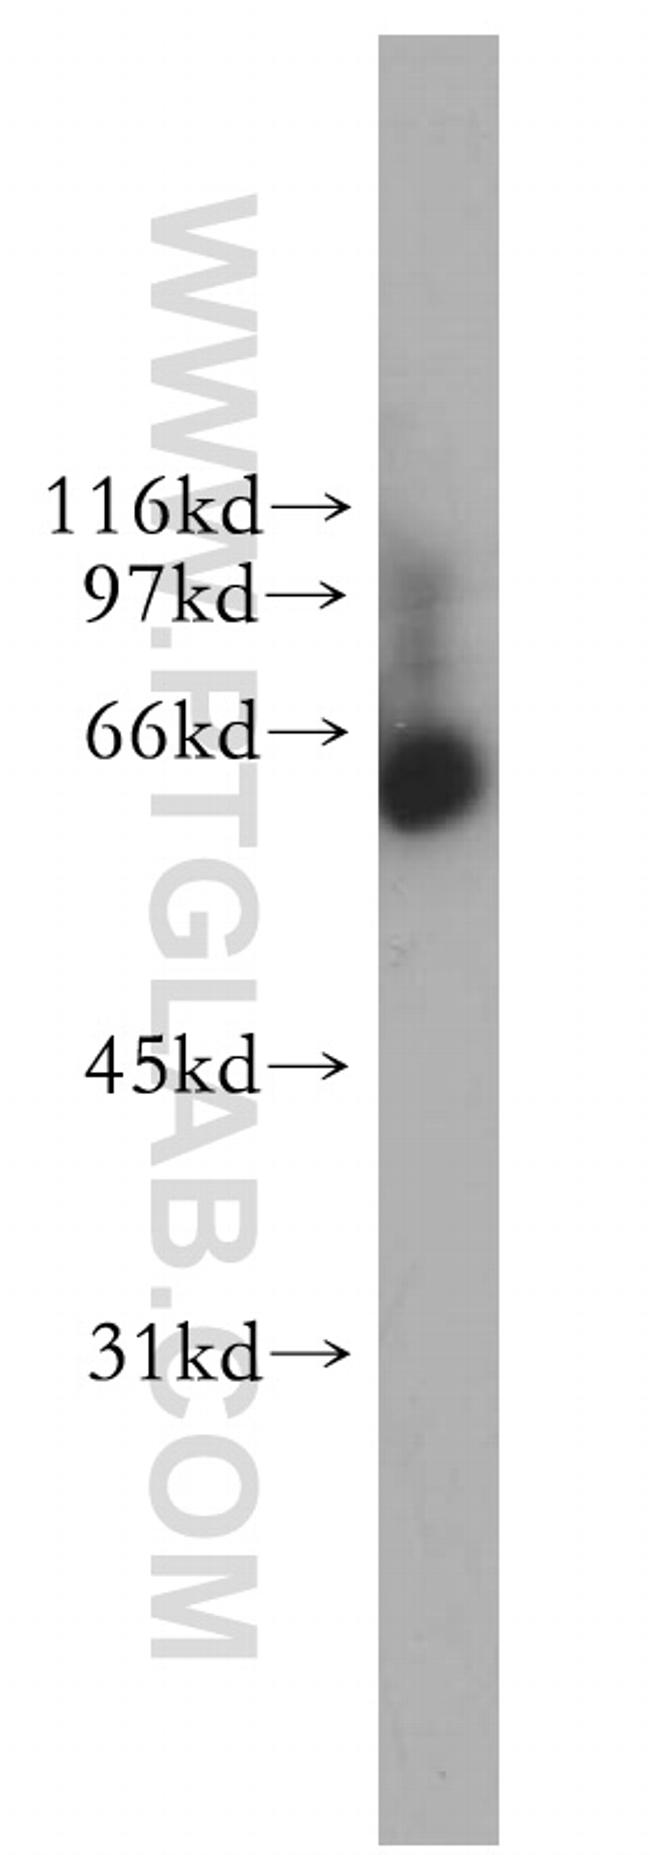 NOP58 Antibody in Western Blot (WB)